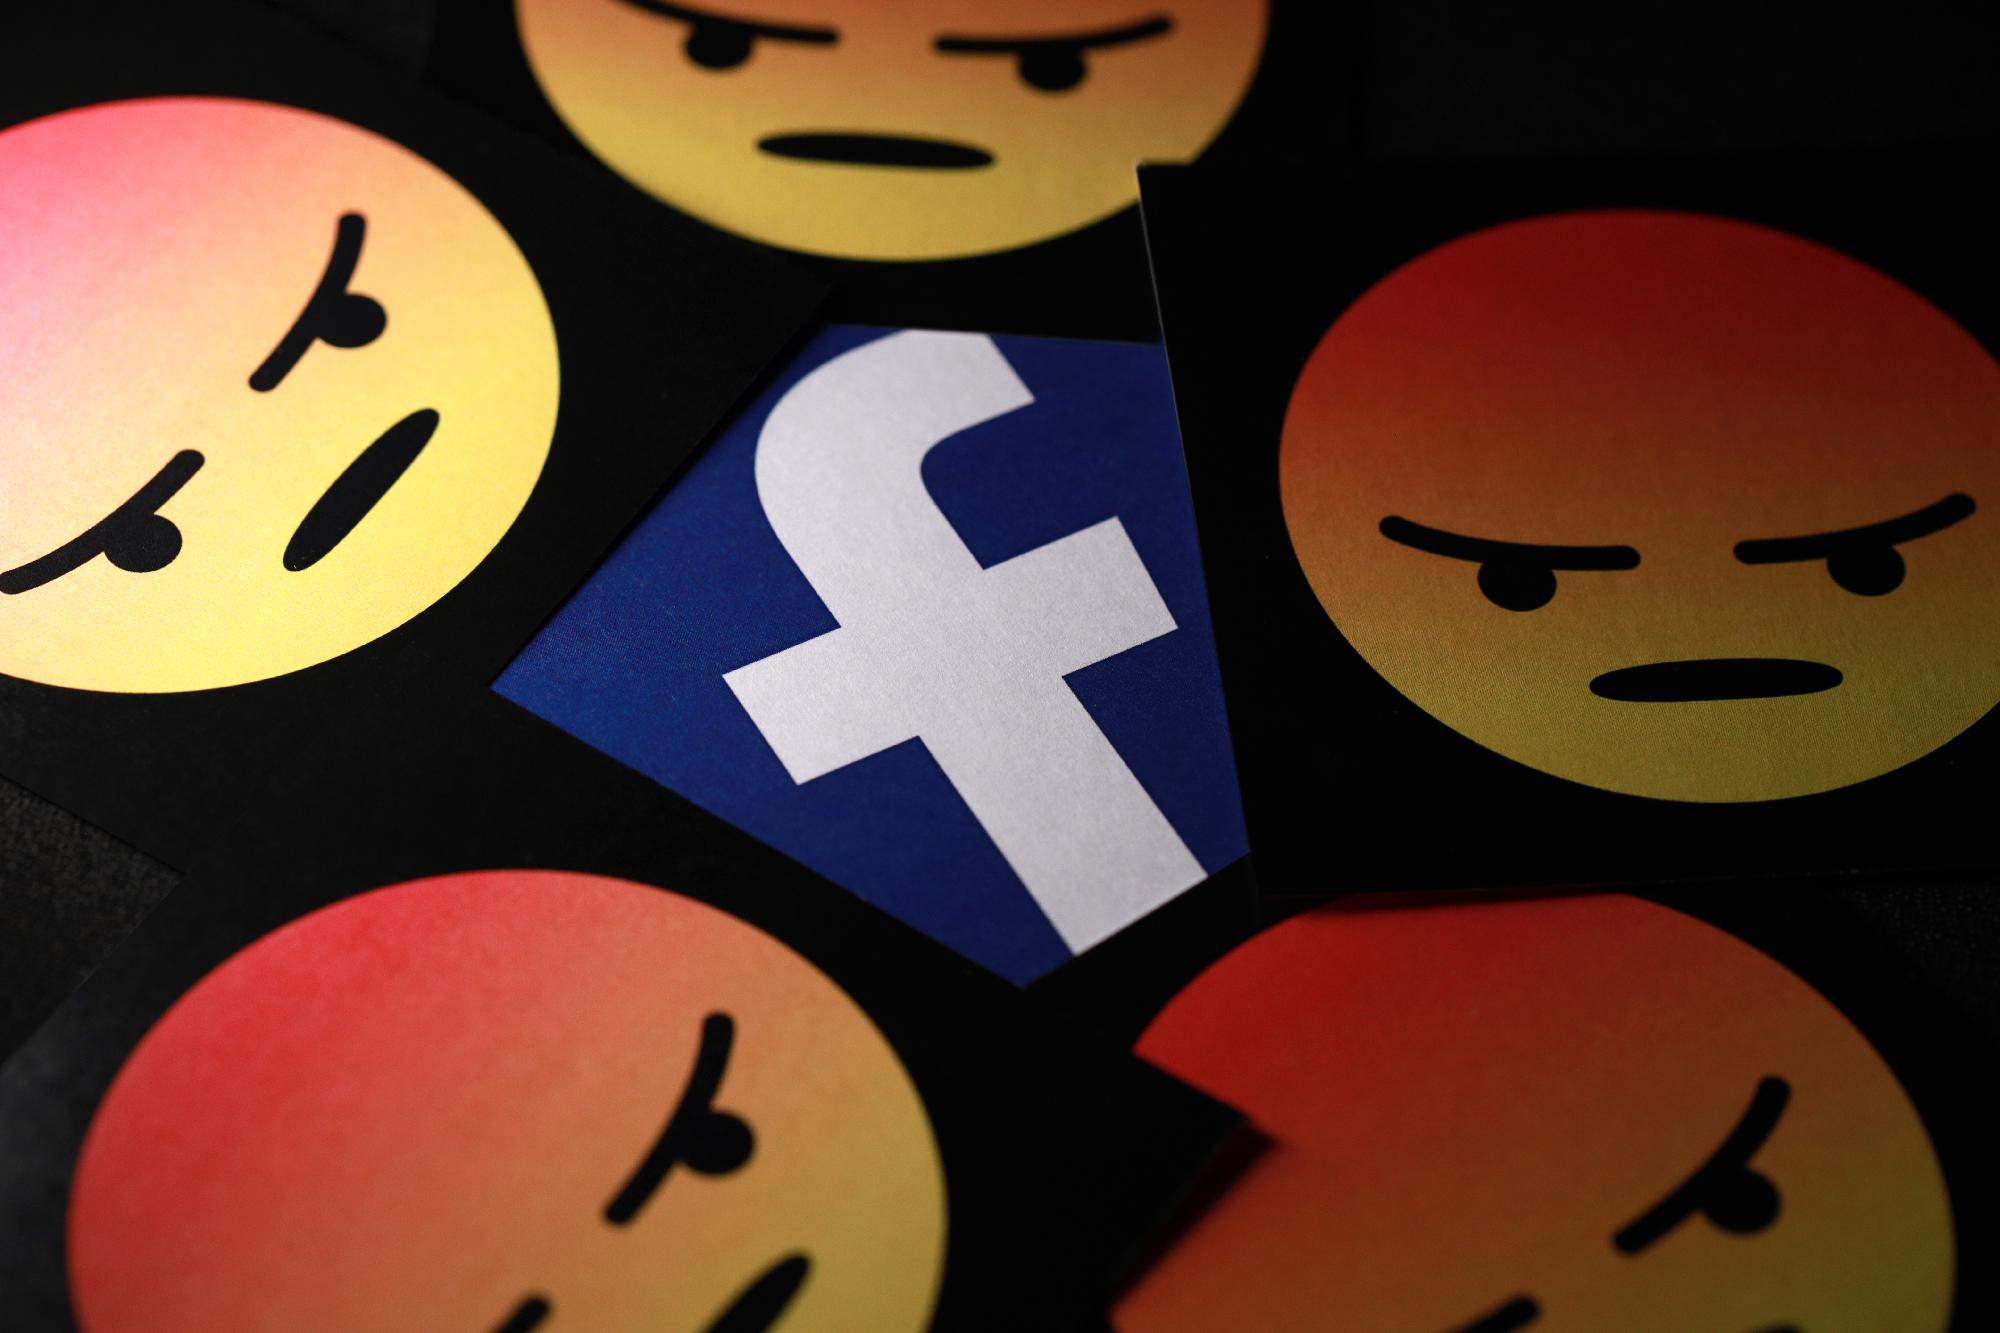 Elérhetetlenné tette a legnagyobb felvidéki magyar hírportál tartalmait a Facebook